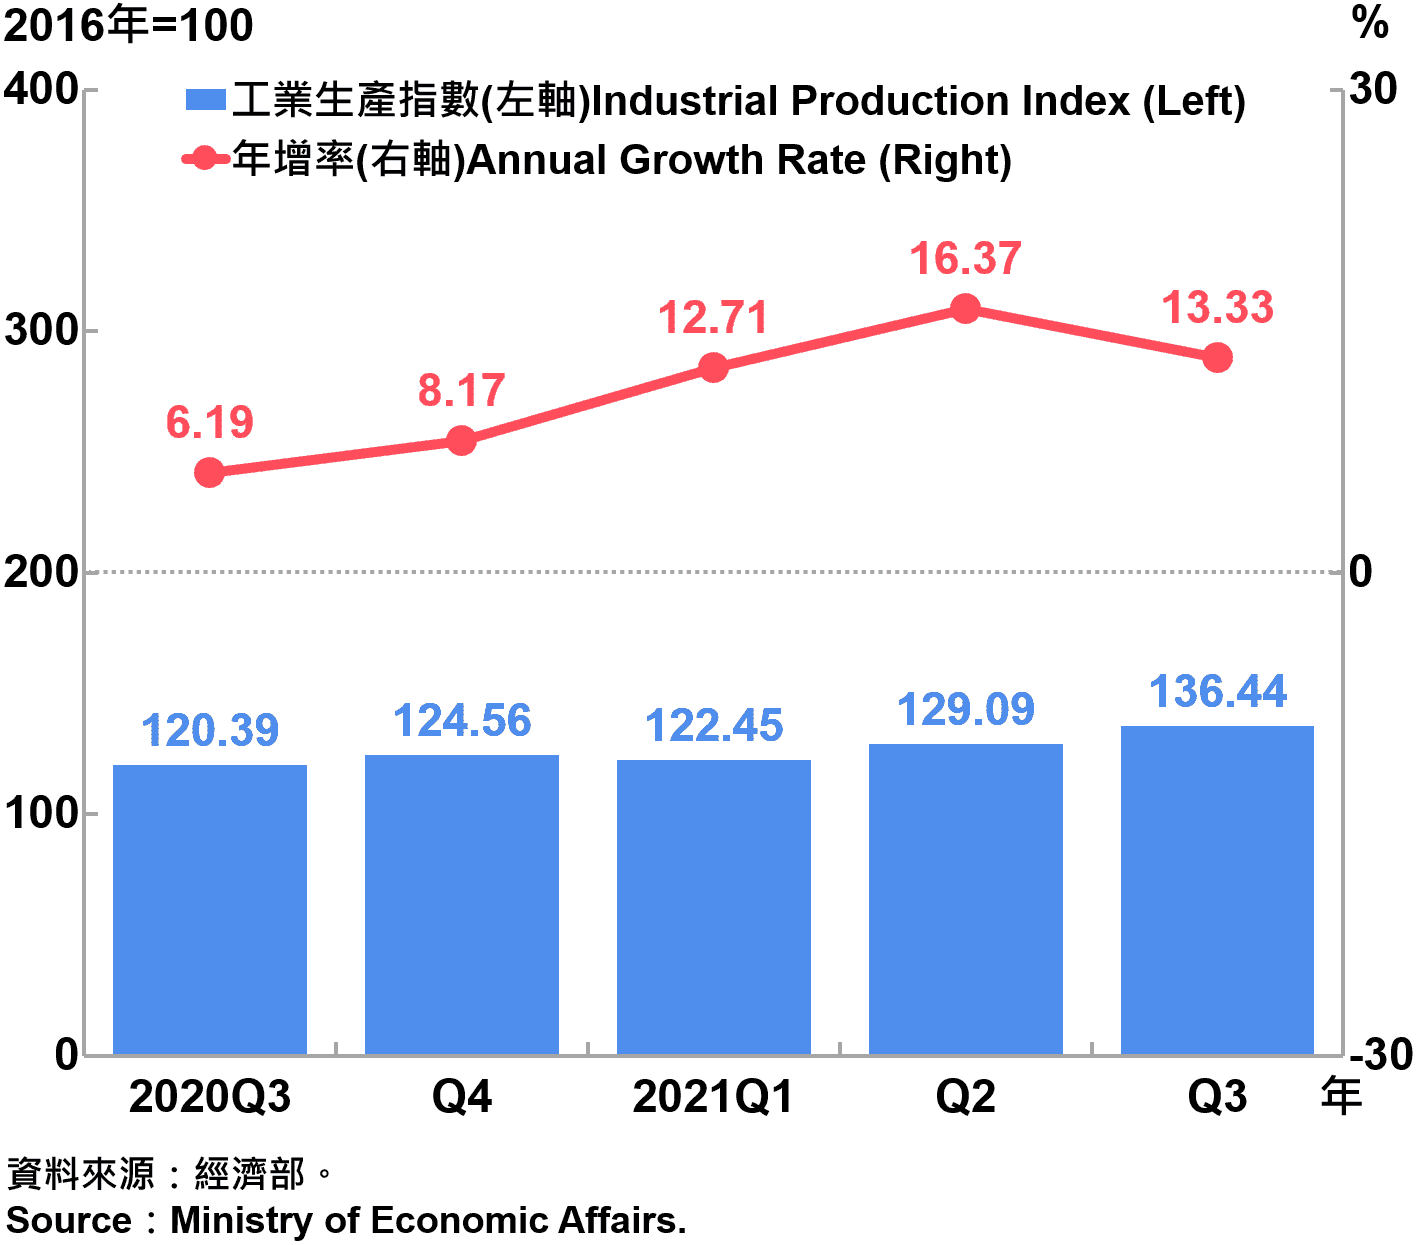 臺灣工業生產指數 Industrial Production Index in Taiwan